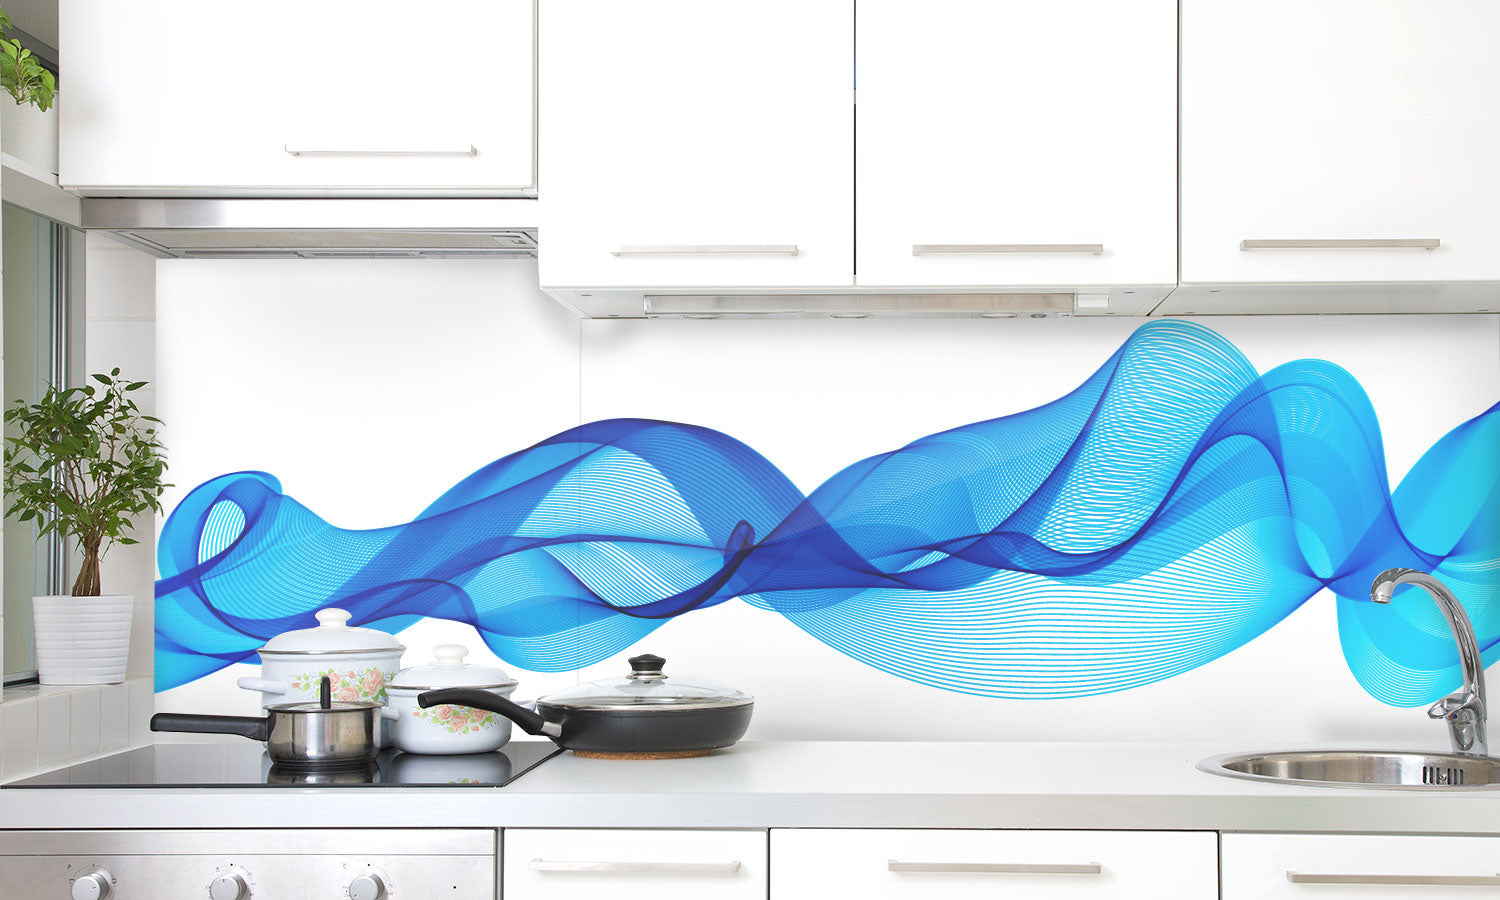 Kuhinjski paneli  Modre črte - Stekleni / PVC plošče / Pleksi steklo - s tiskom za kuhinjo, Stenske obloge PKU039 - Life-decor.si